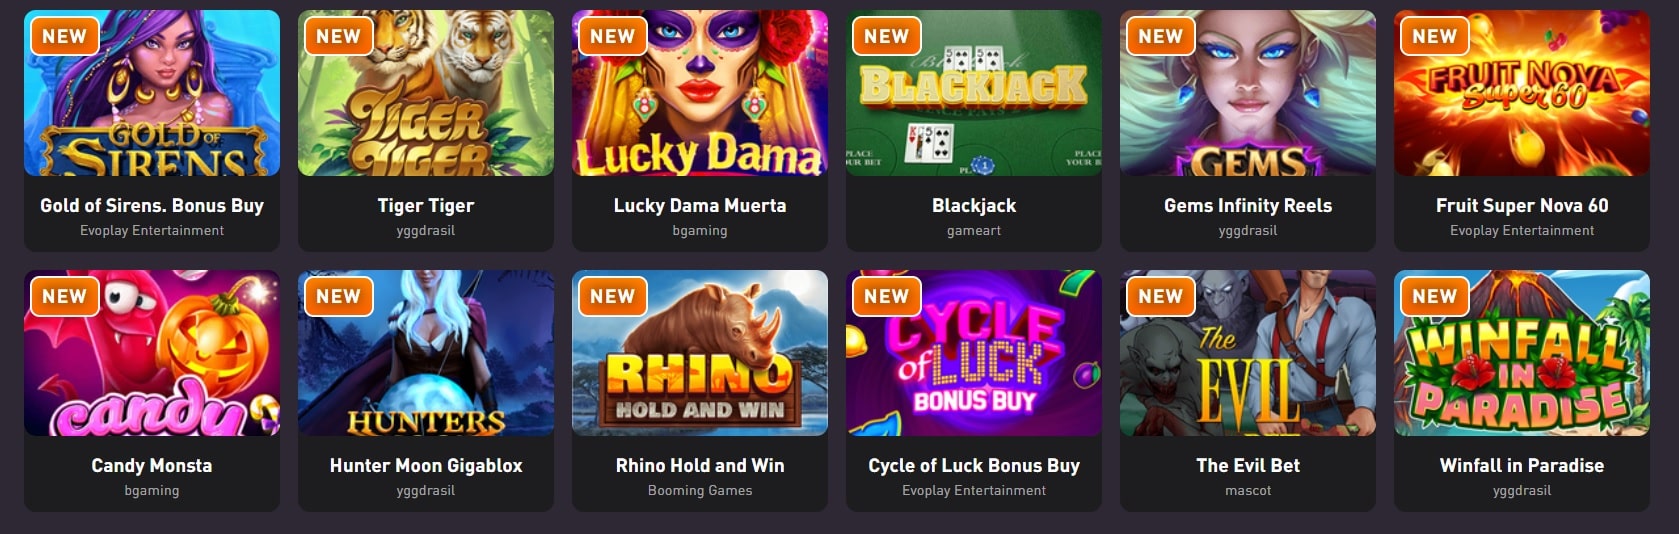 rocketpot casino new slots